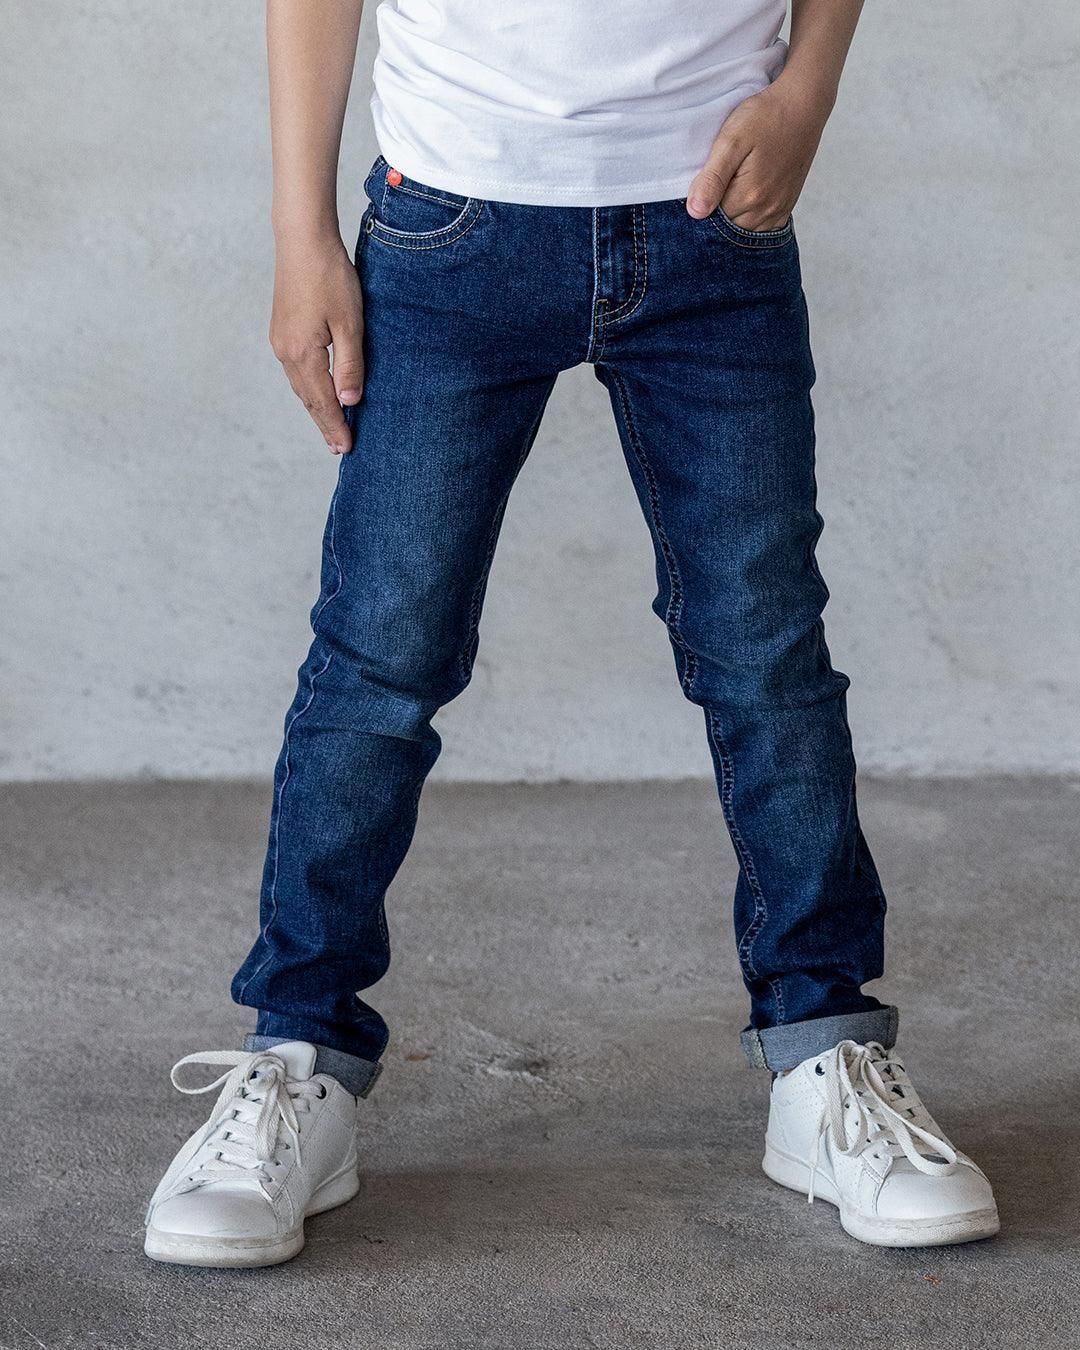 Broek Skinny fit jeans used dark used